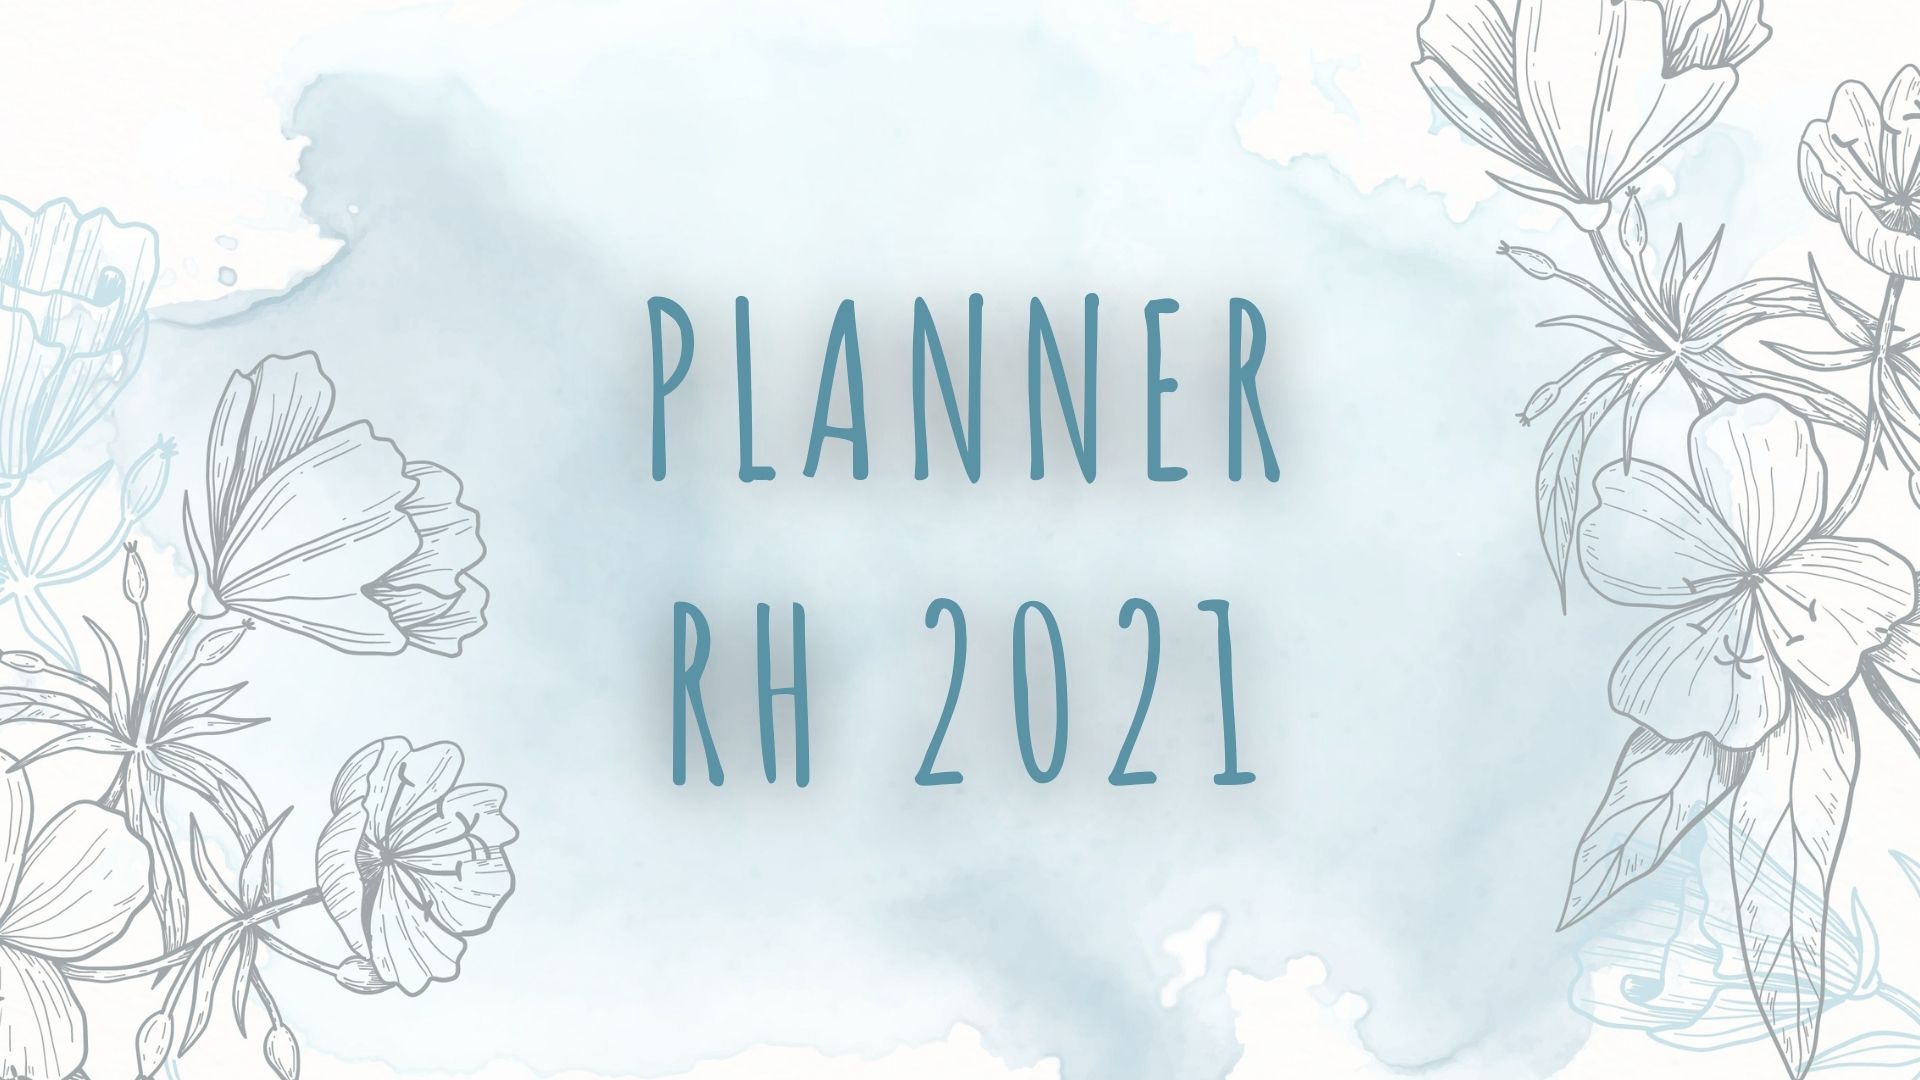 No momento você está vendo Planner RH 2021